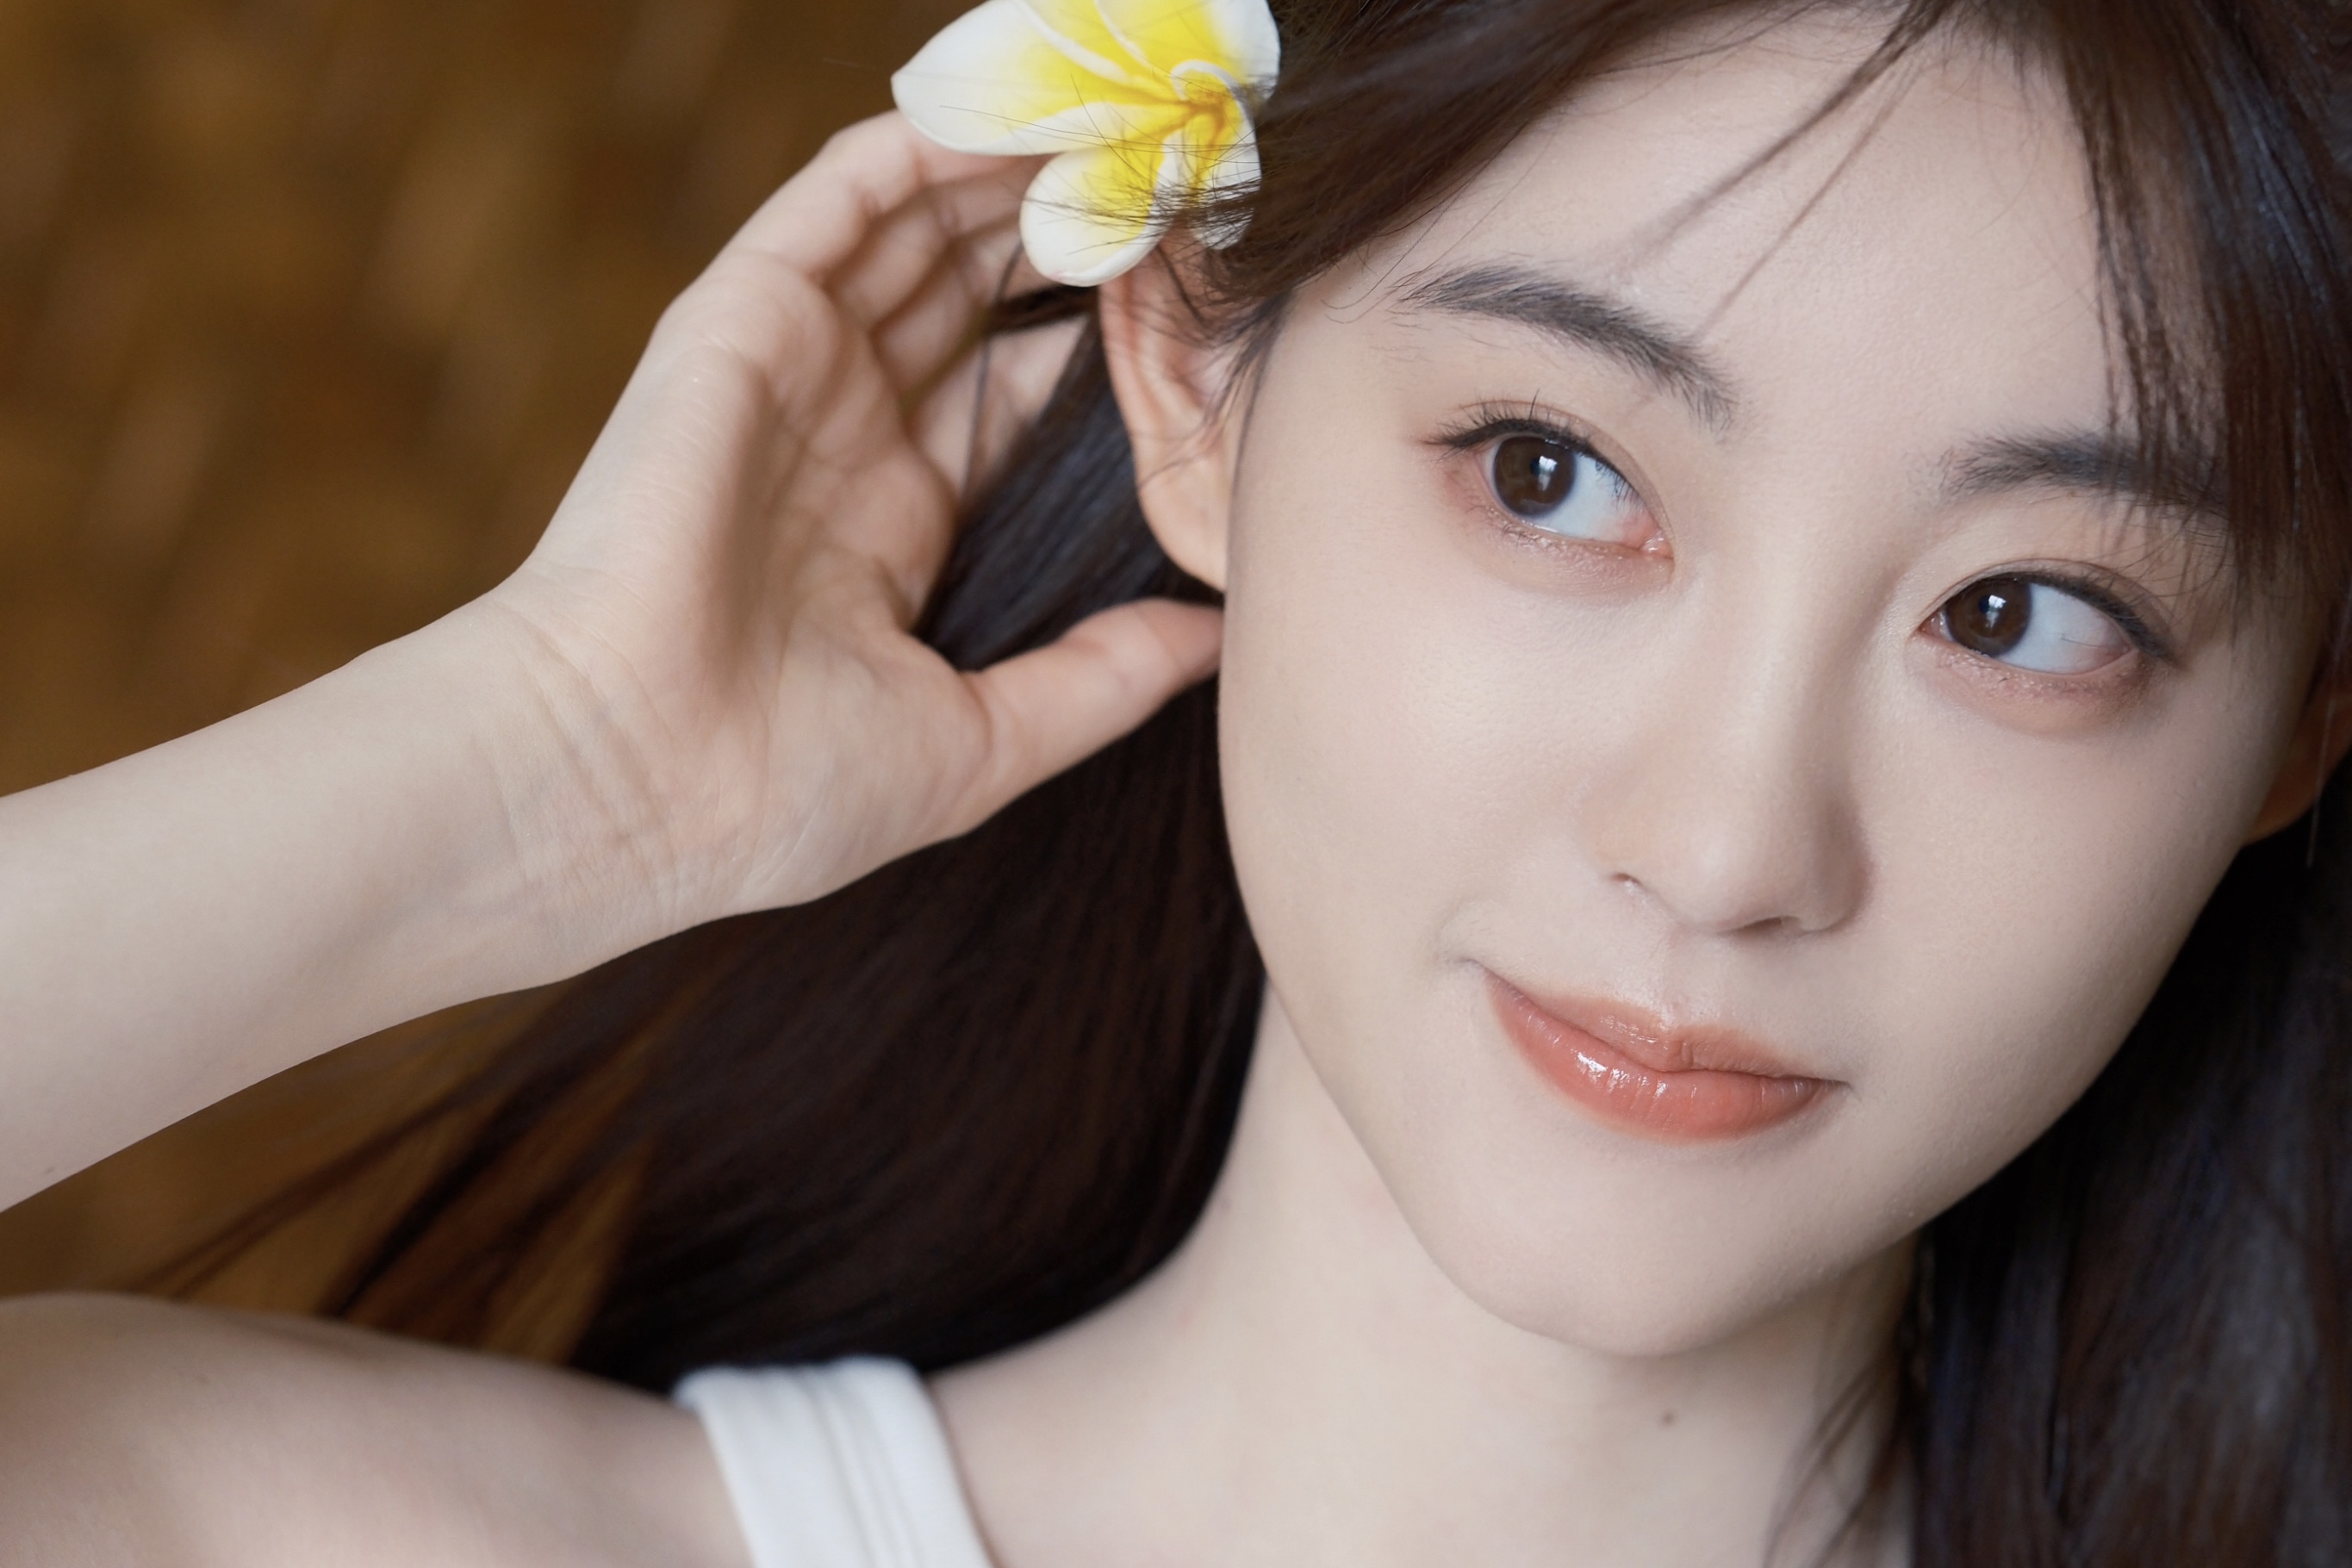 Asian Women Actress Black Hair Smiling Flower In Hair 2730x1820